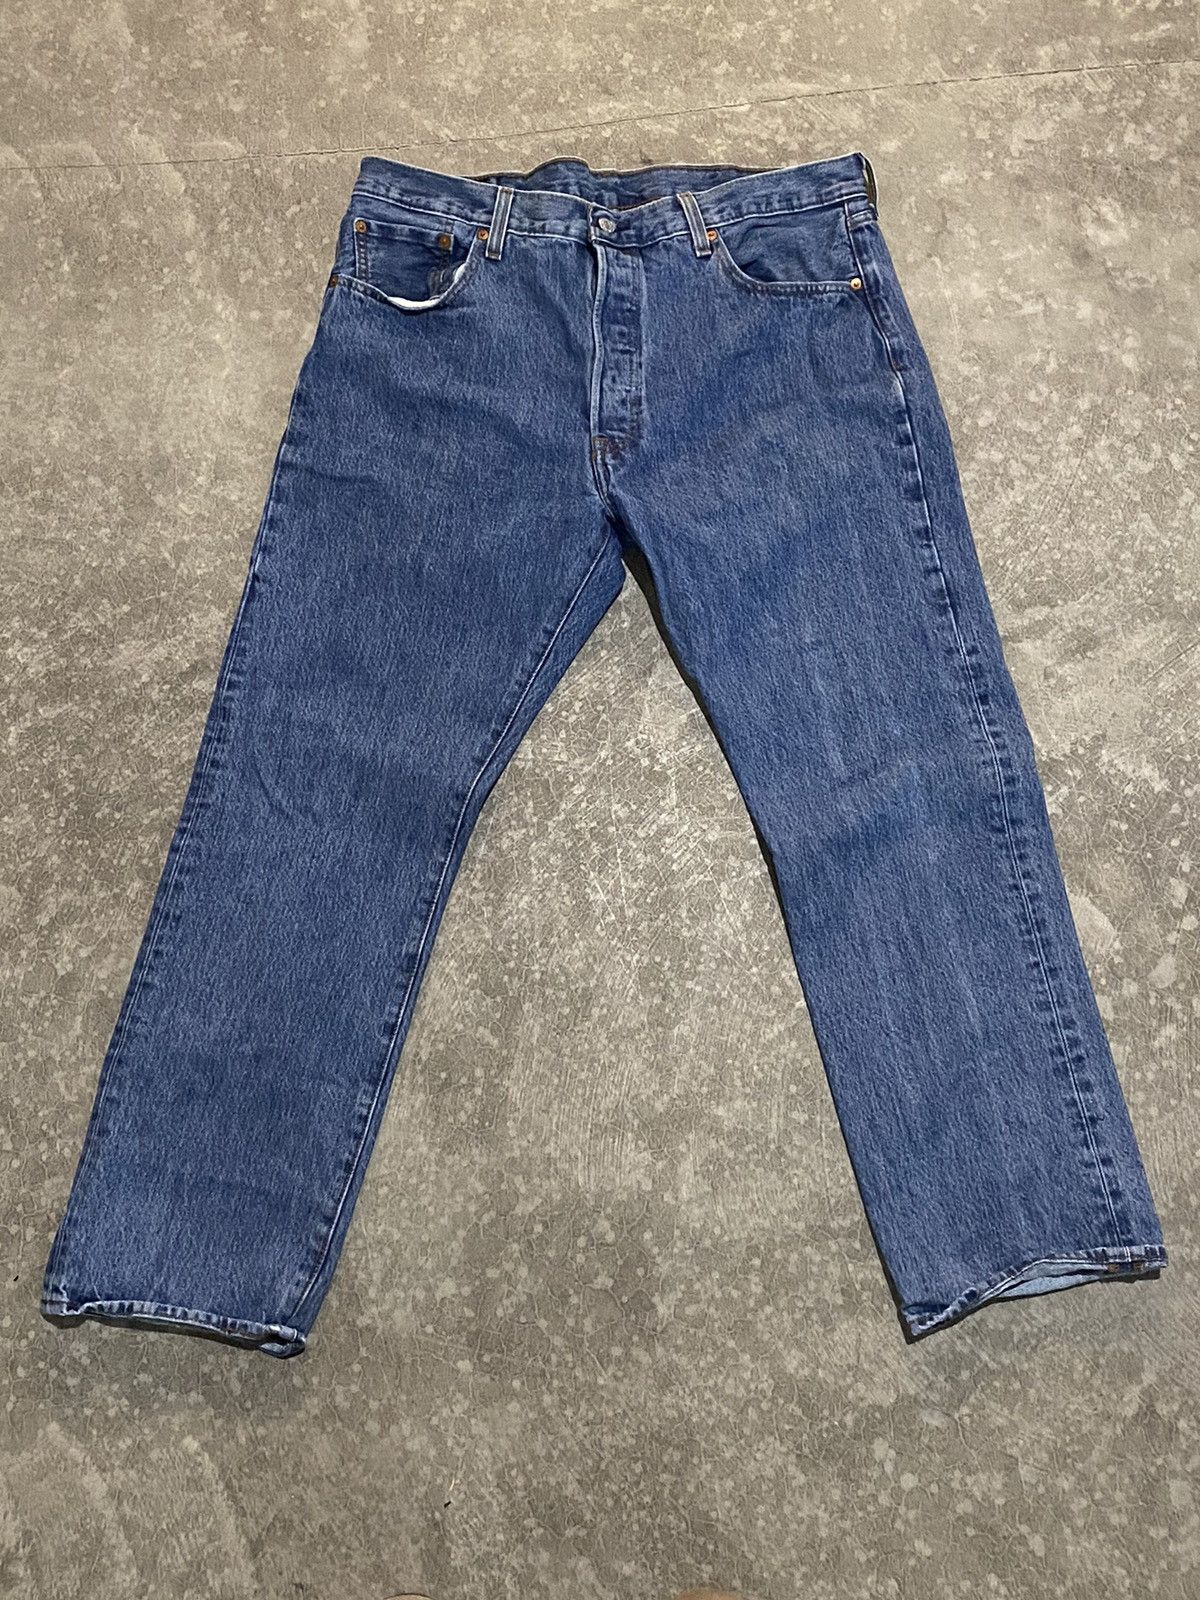 Vintage Blue Levi 501 Baggy Jeans 38x30 | Grailed